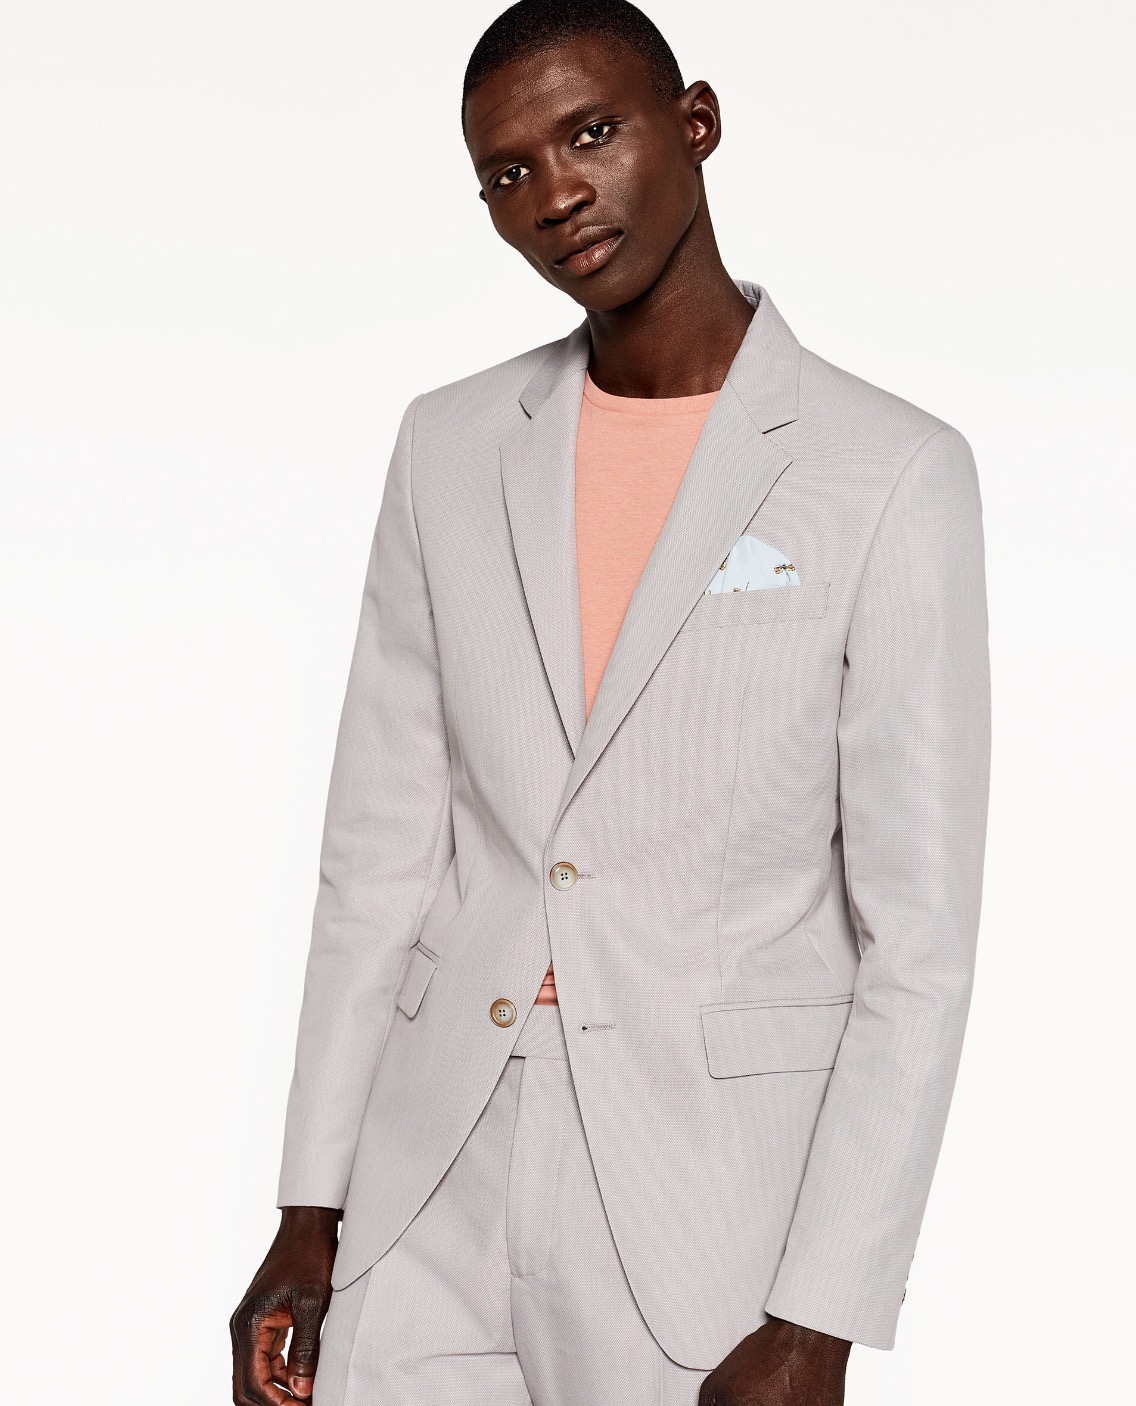 Grey Cotton Suit - SUIT ADDICT